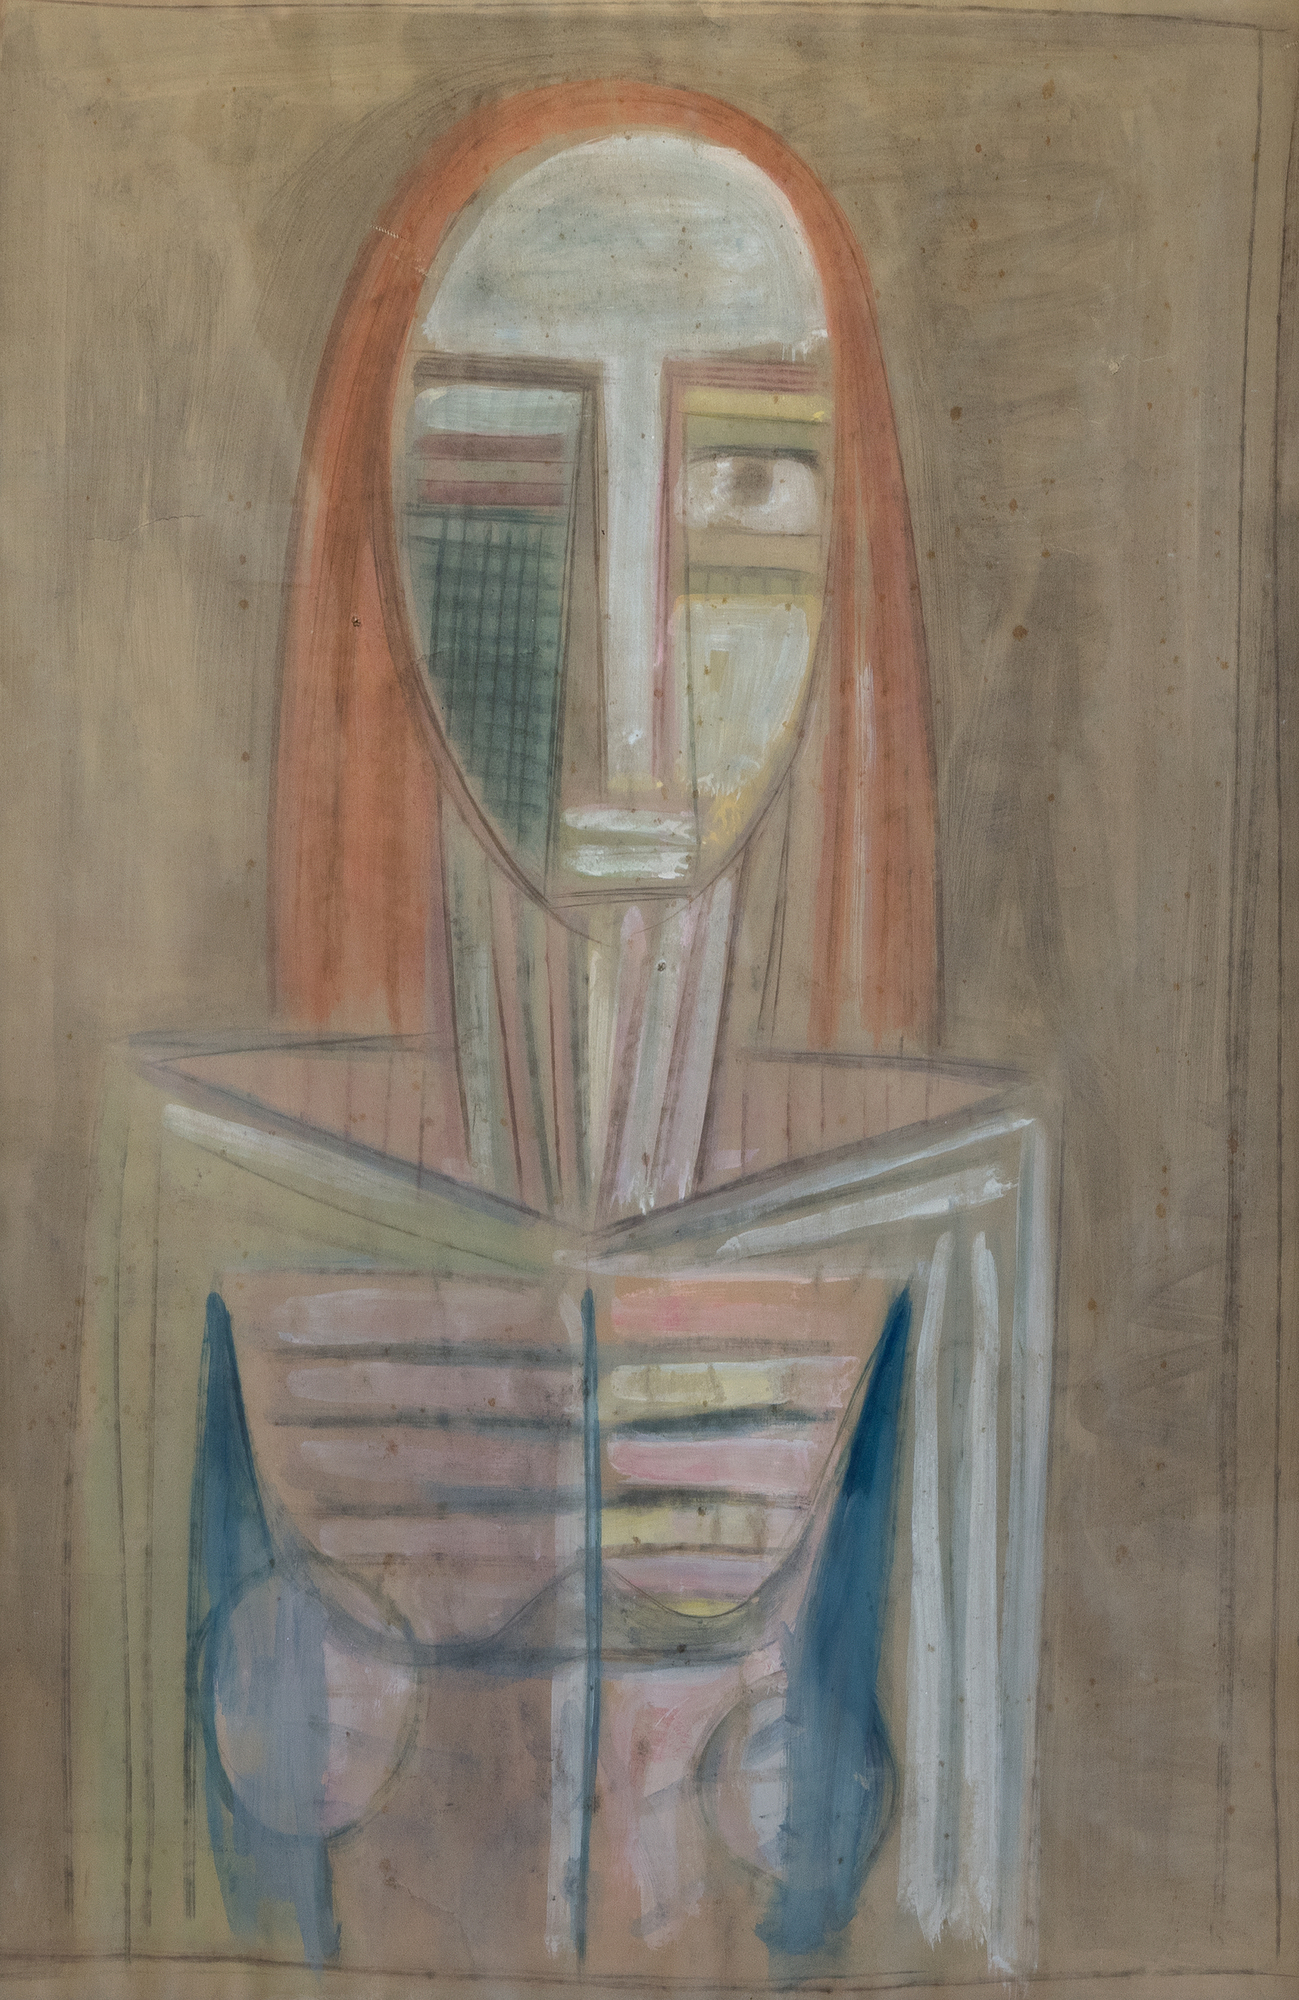 WIFREDO LAM - Portrait / La Table I, coin d'atelier - tempera sur papier (double face) - 38 x 24 3/4 in.